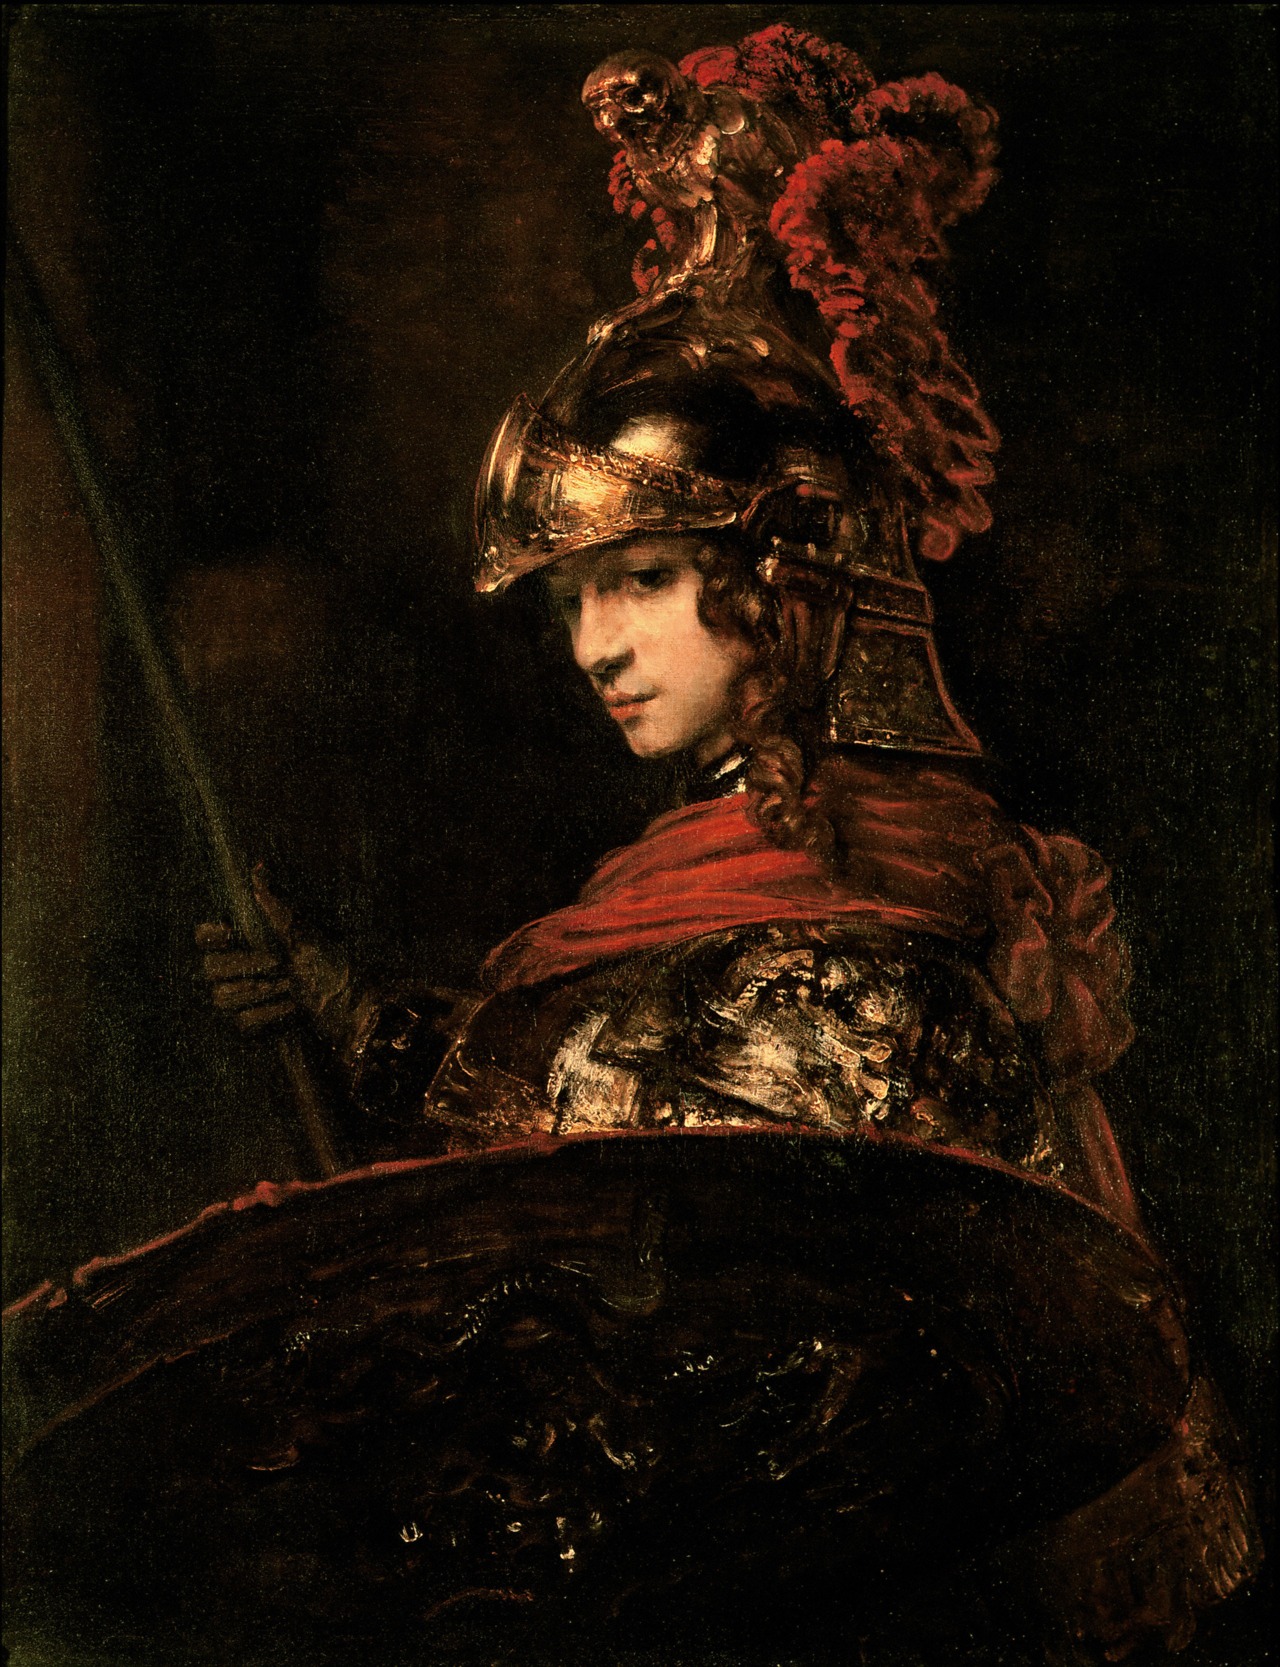 帕拉斯·雅典娜 by 伦勃朗· 范·莱因 - 1664-65 - 118 x 91.1 cm 